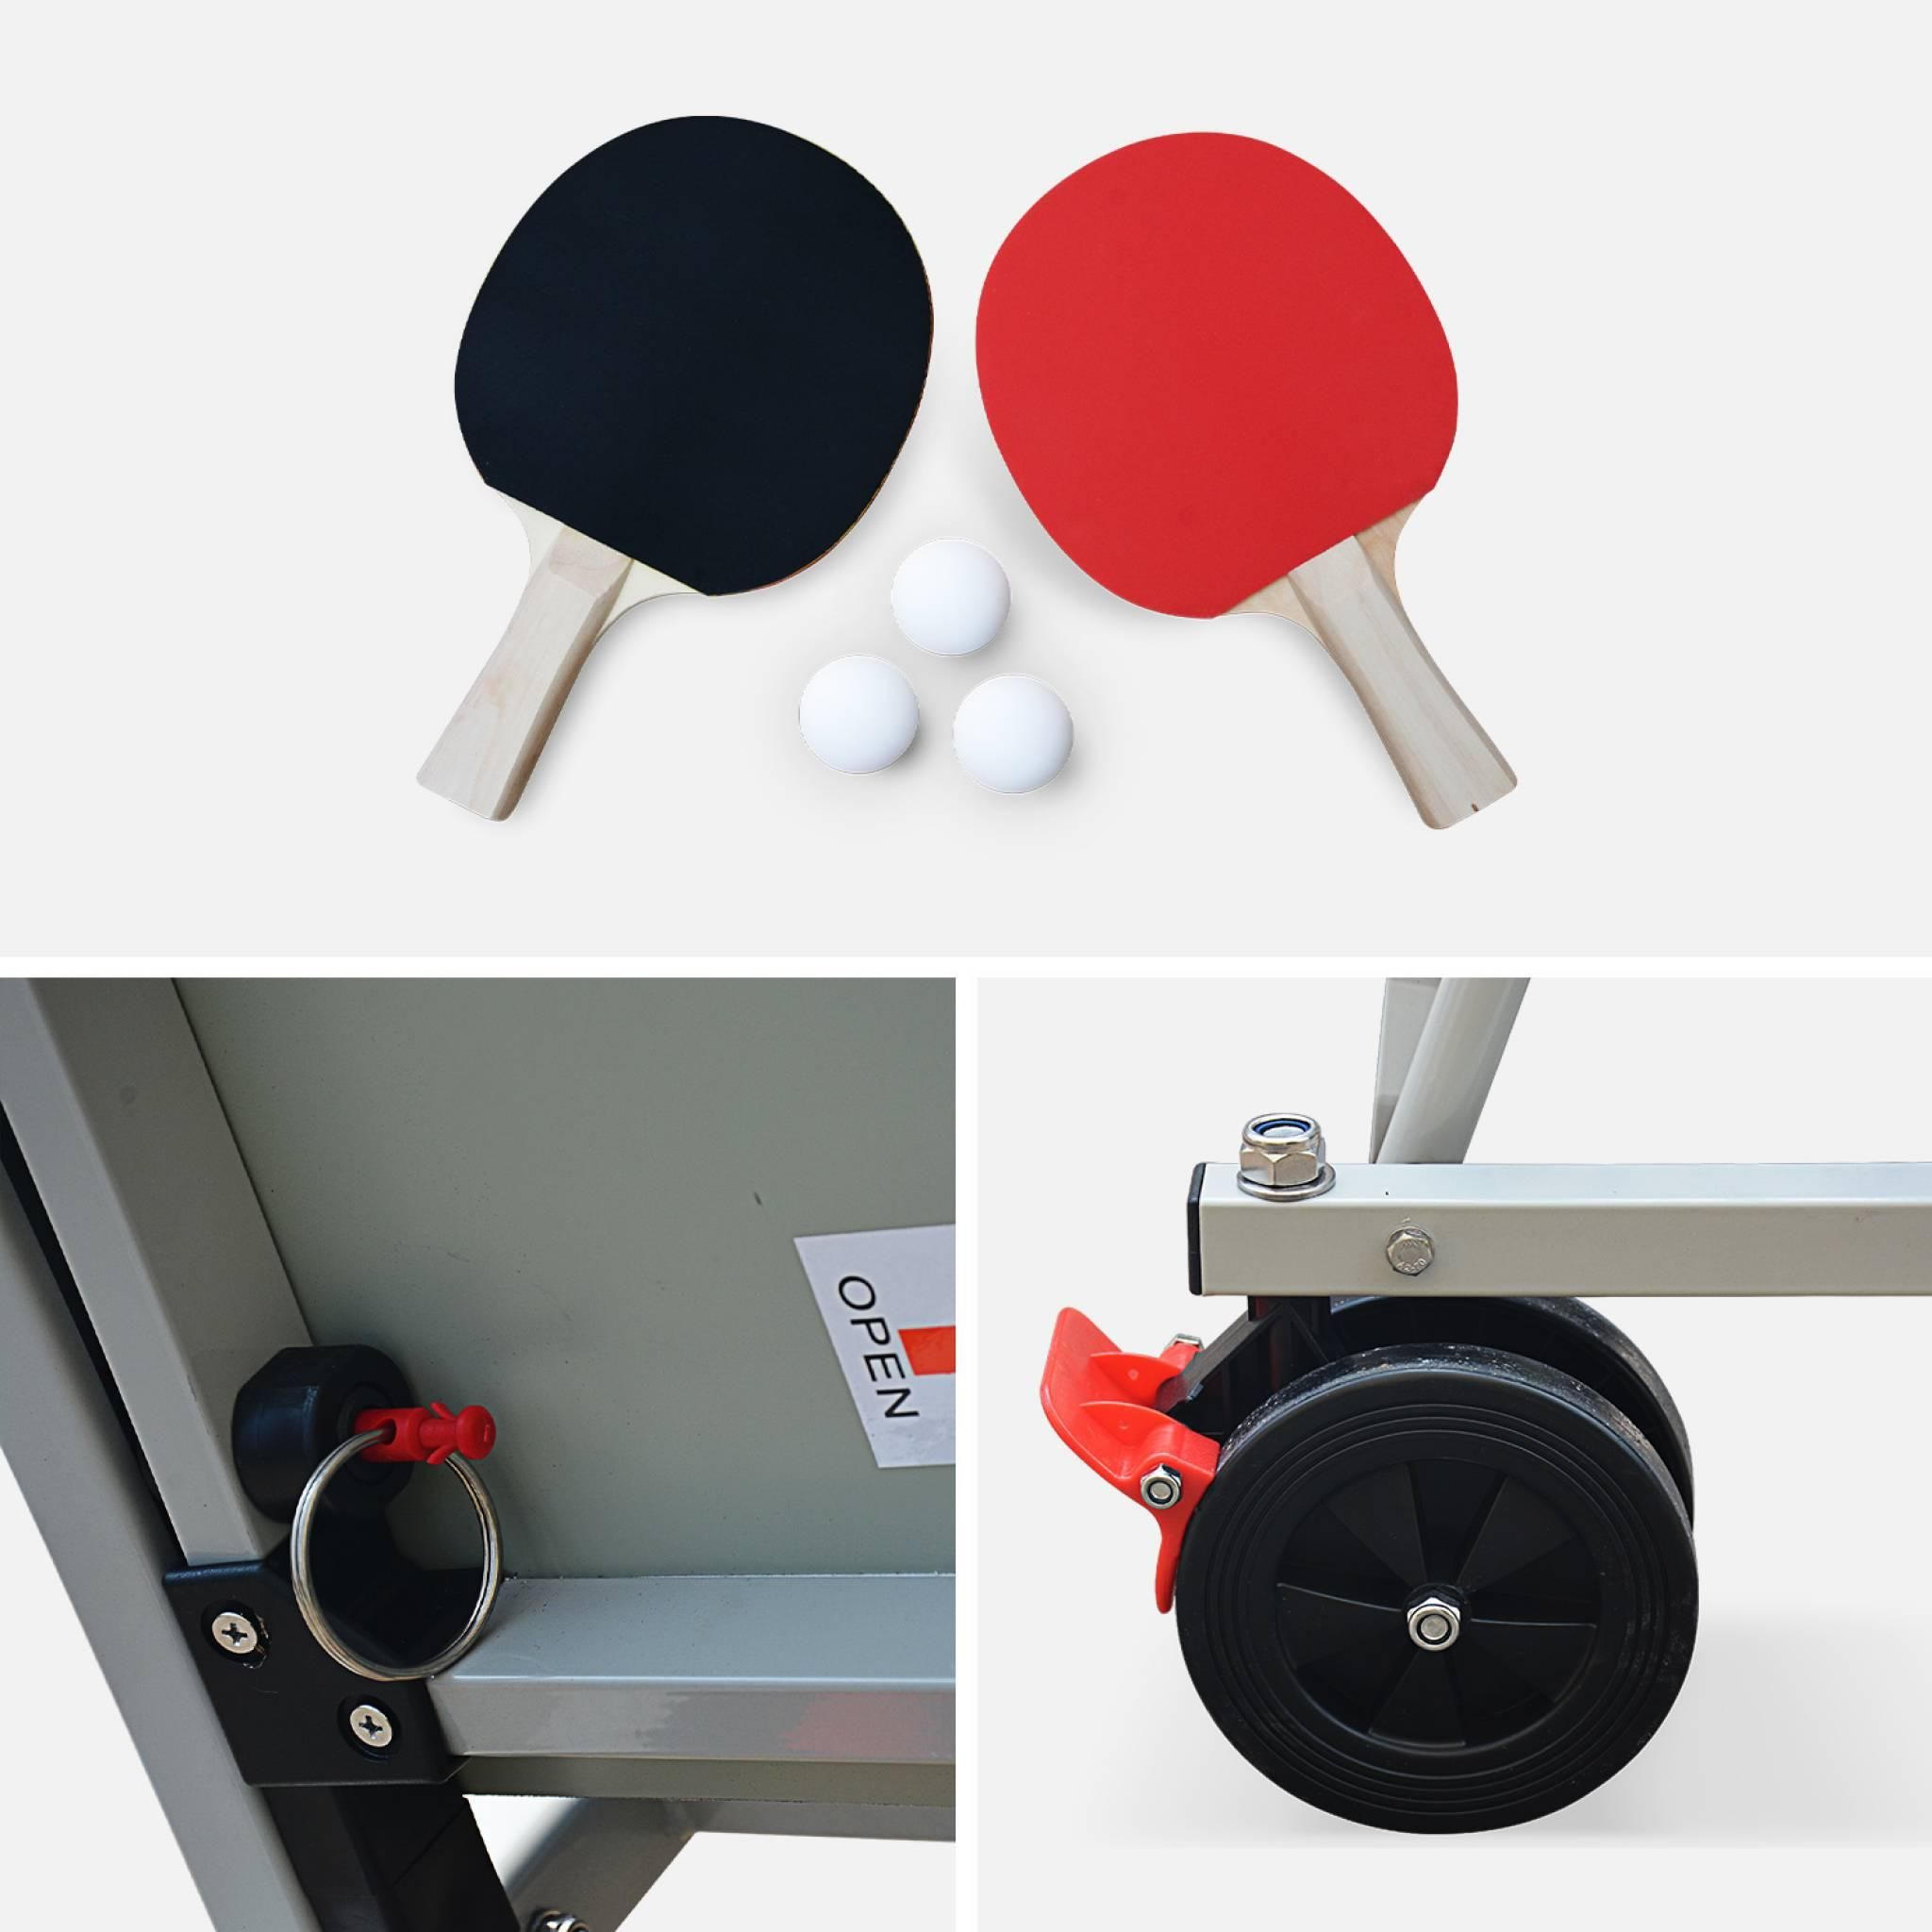 SWEEEK Table de ping pong OUTDOOR bleue - table pliable avec 2 raquettes et  3 balles. pour utilisation extérieure. sport tennis de table pas cher 